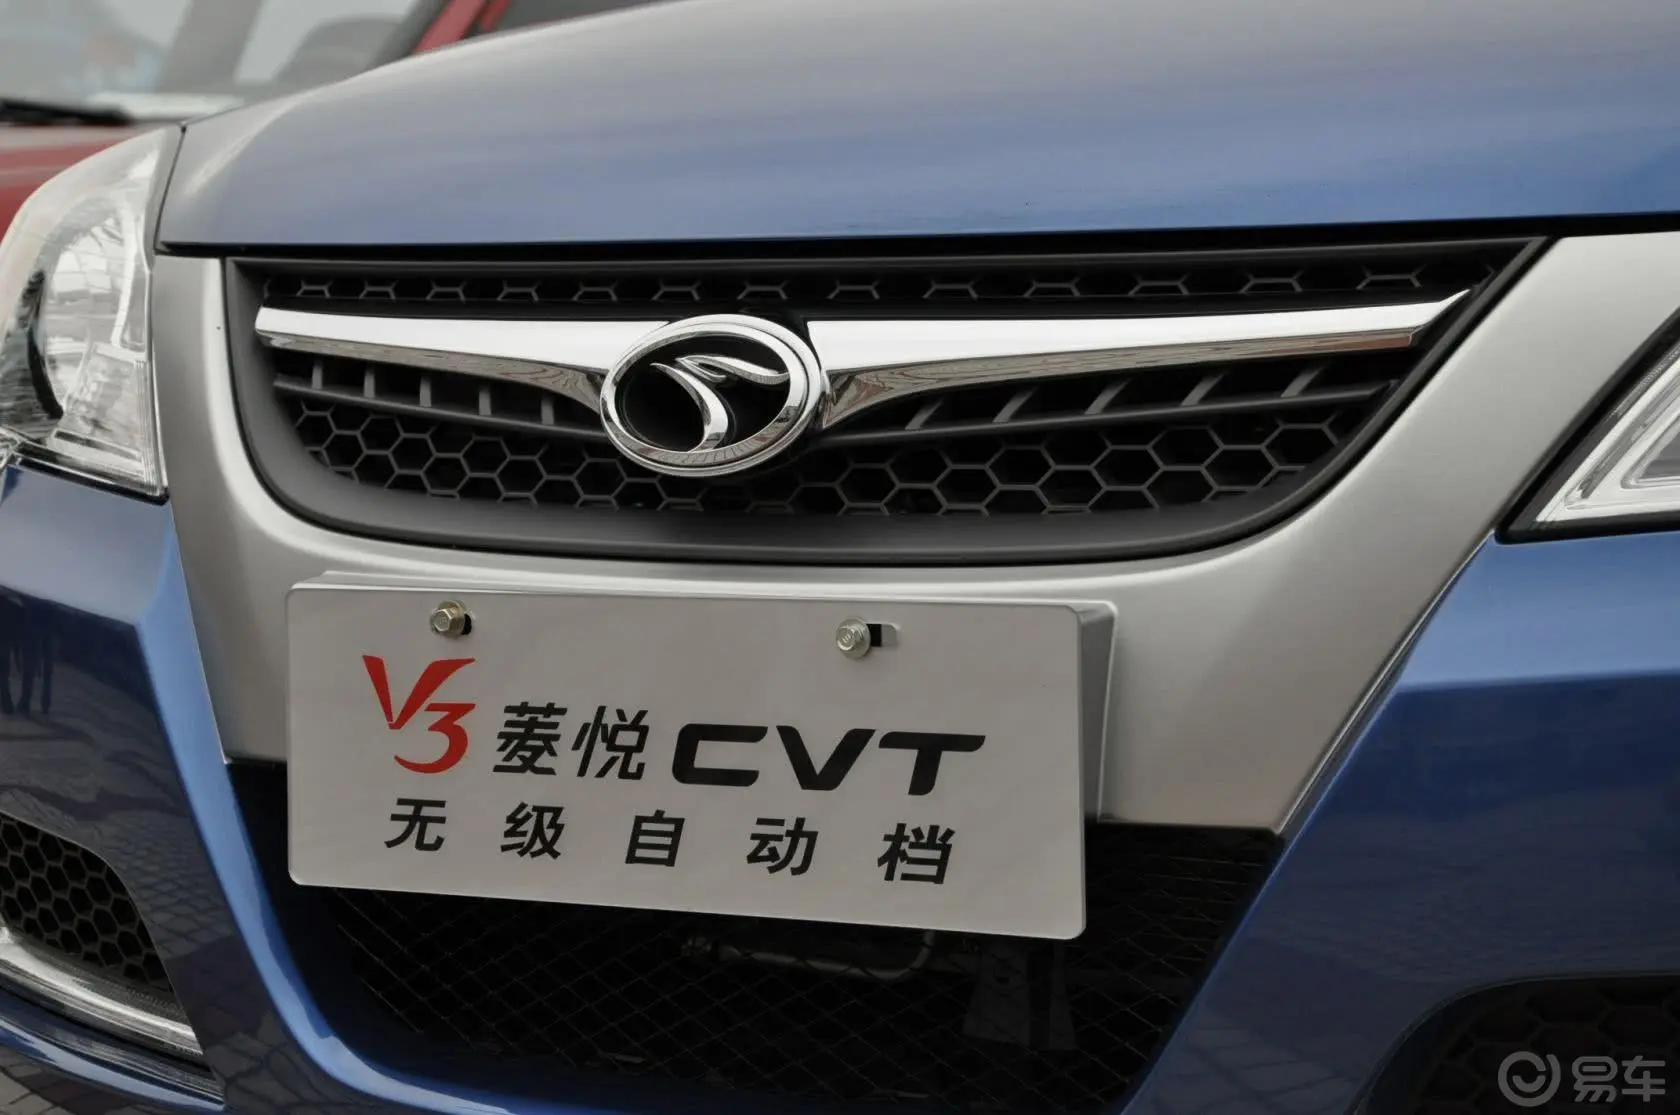 V3菱悦旗舰版 SEi CVT外观